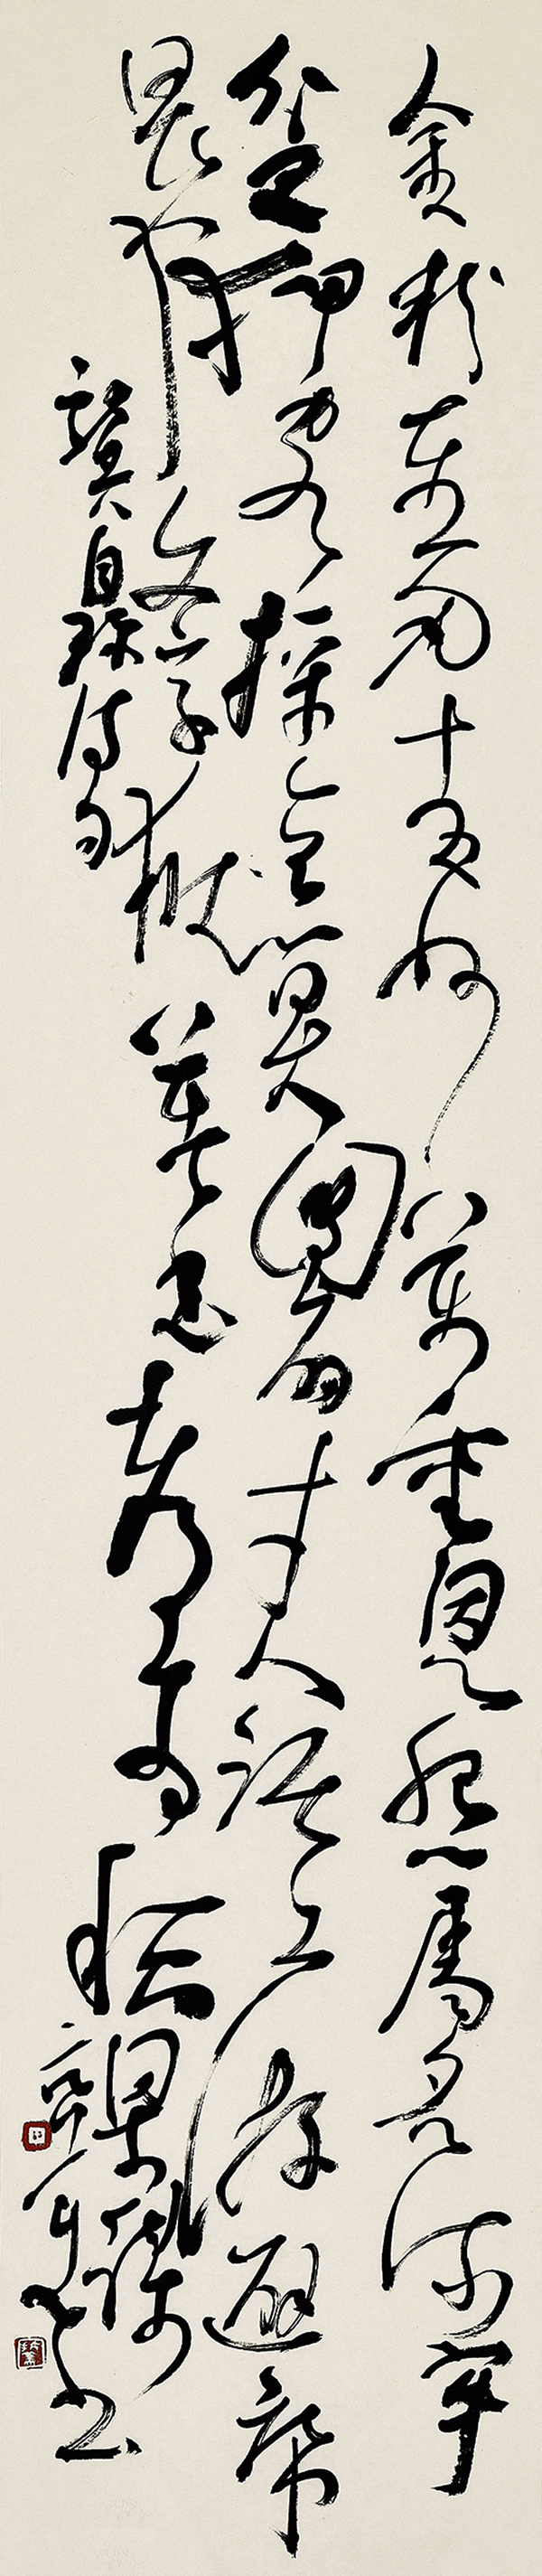 胡抗美:临帖是书法艺术家终身的功课